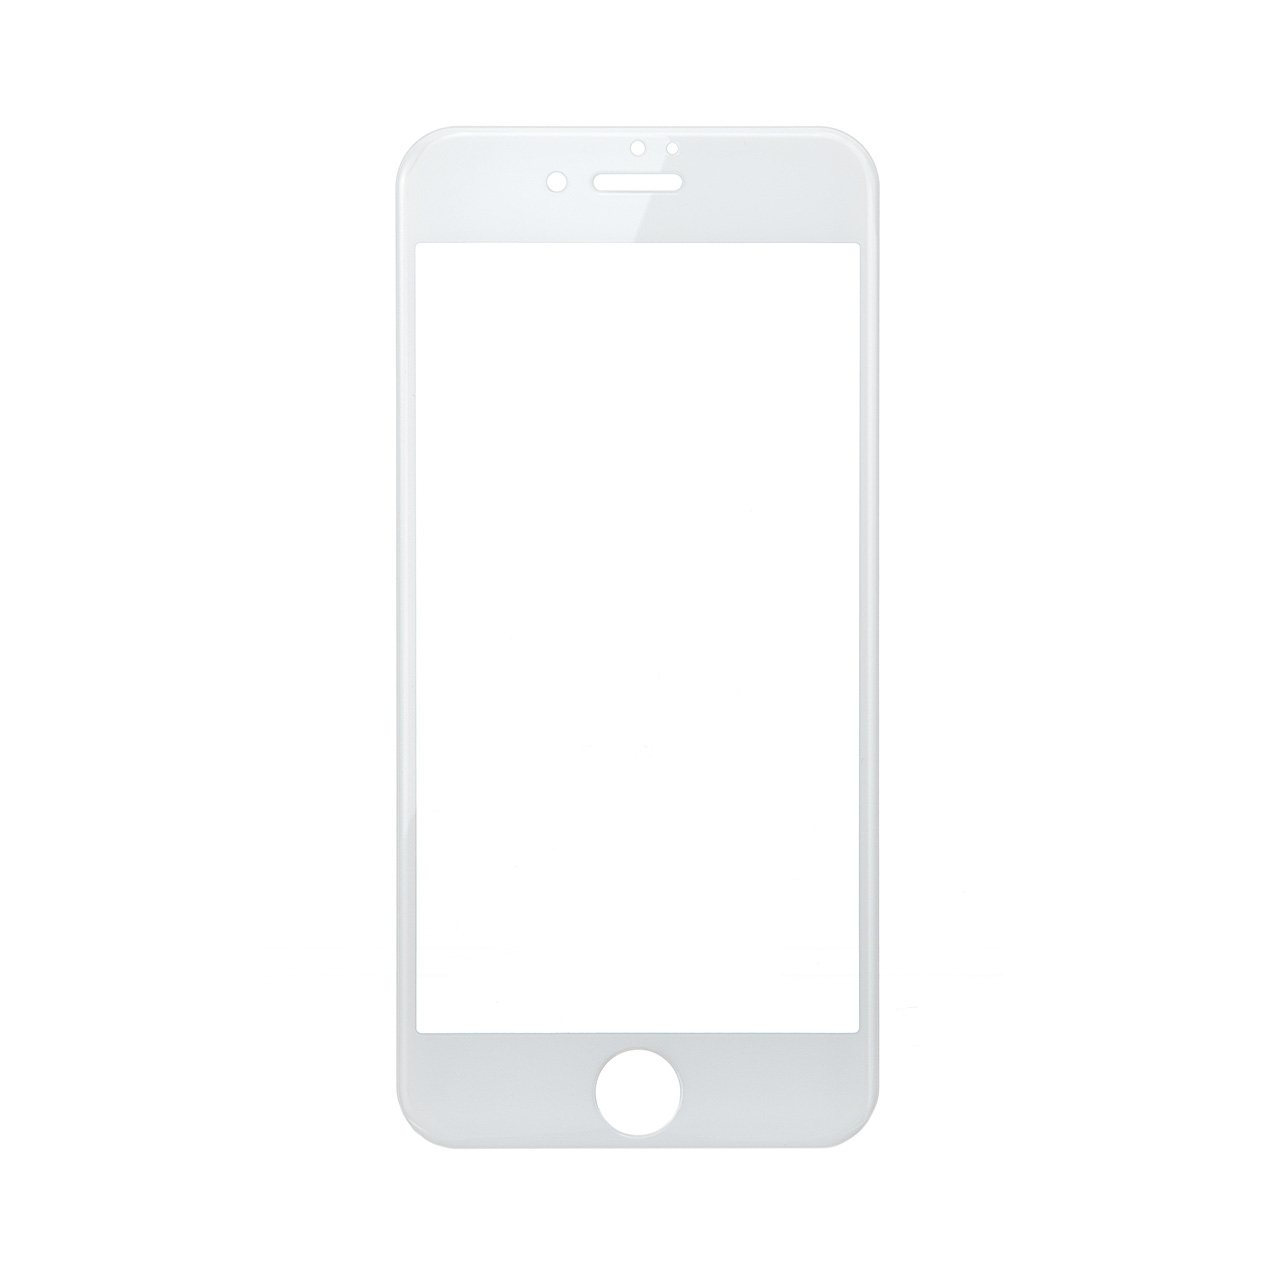 iPhone 8/7tی십KXtB(ɎqE3D TouchETouch IDECJBeΉEdx9HEEh`EzCgj 200-LCD041W